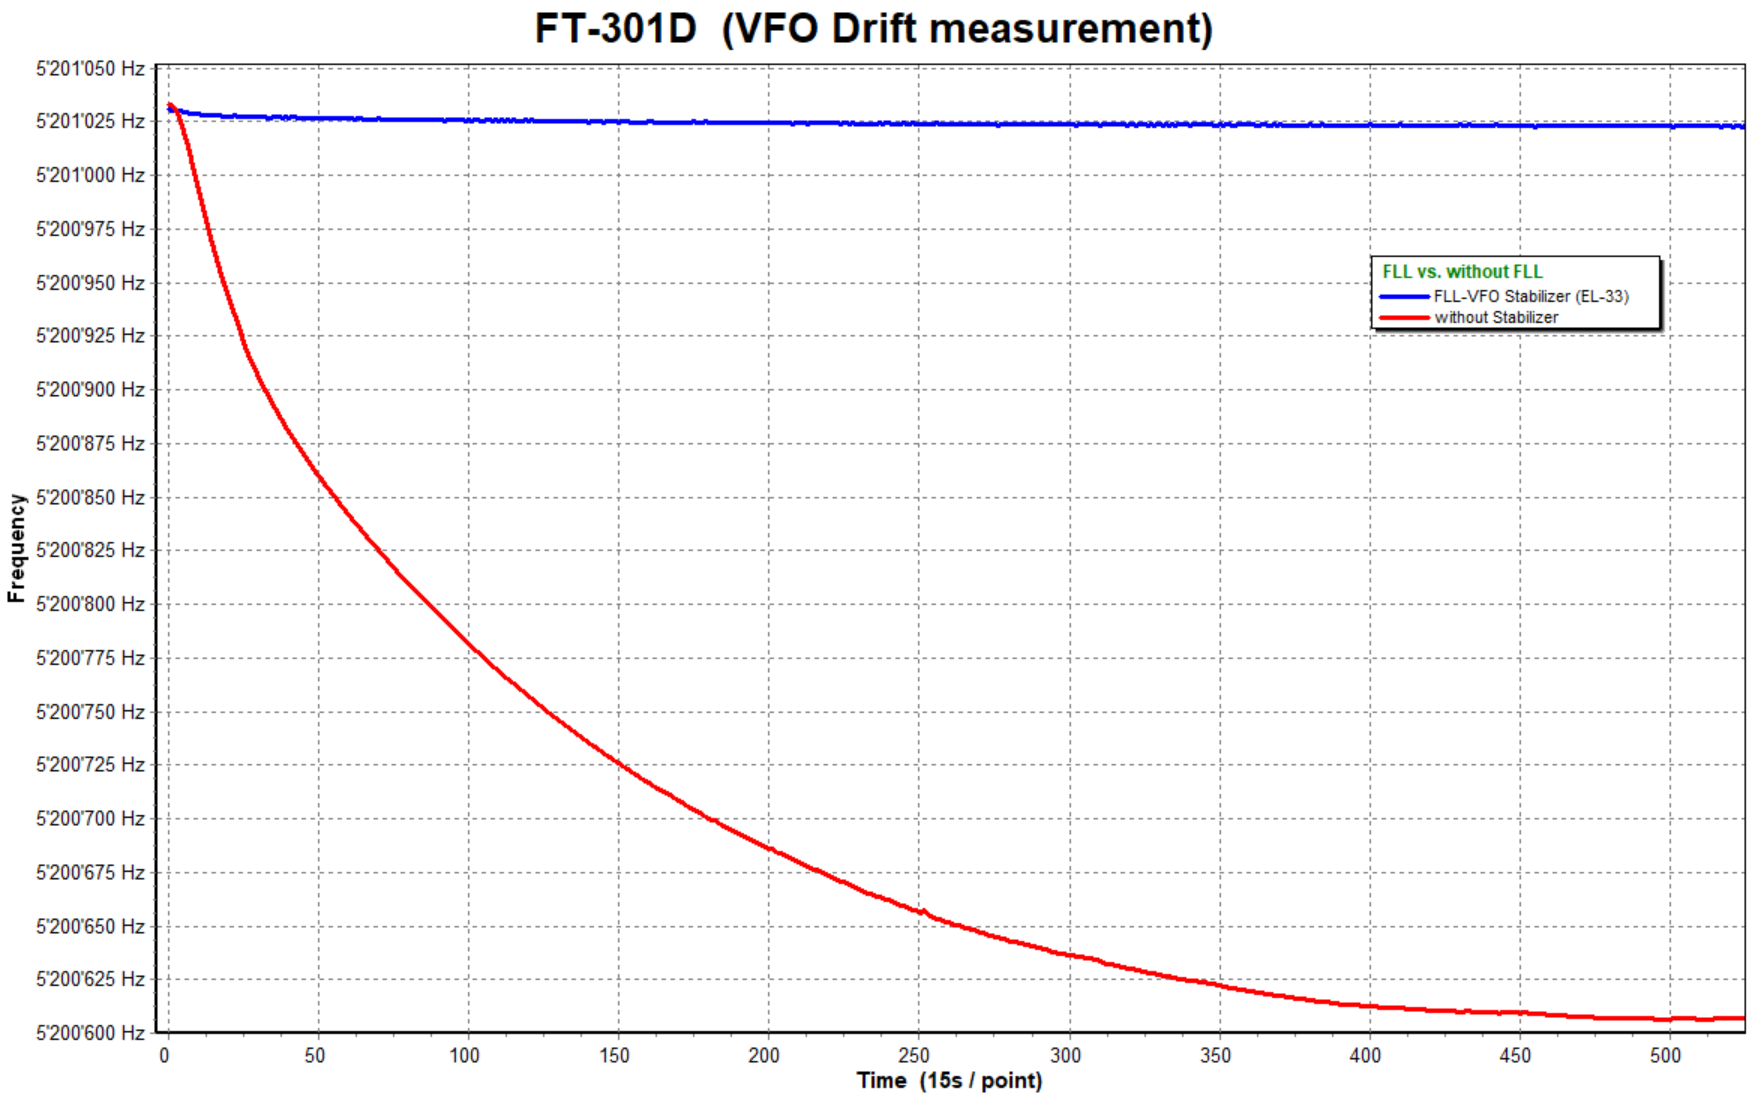 drift-measurement-ft-301d.png